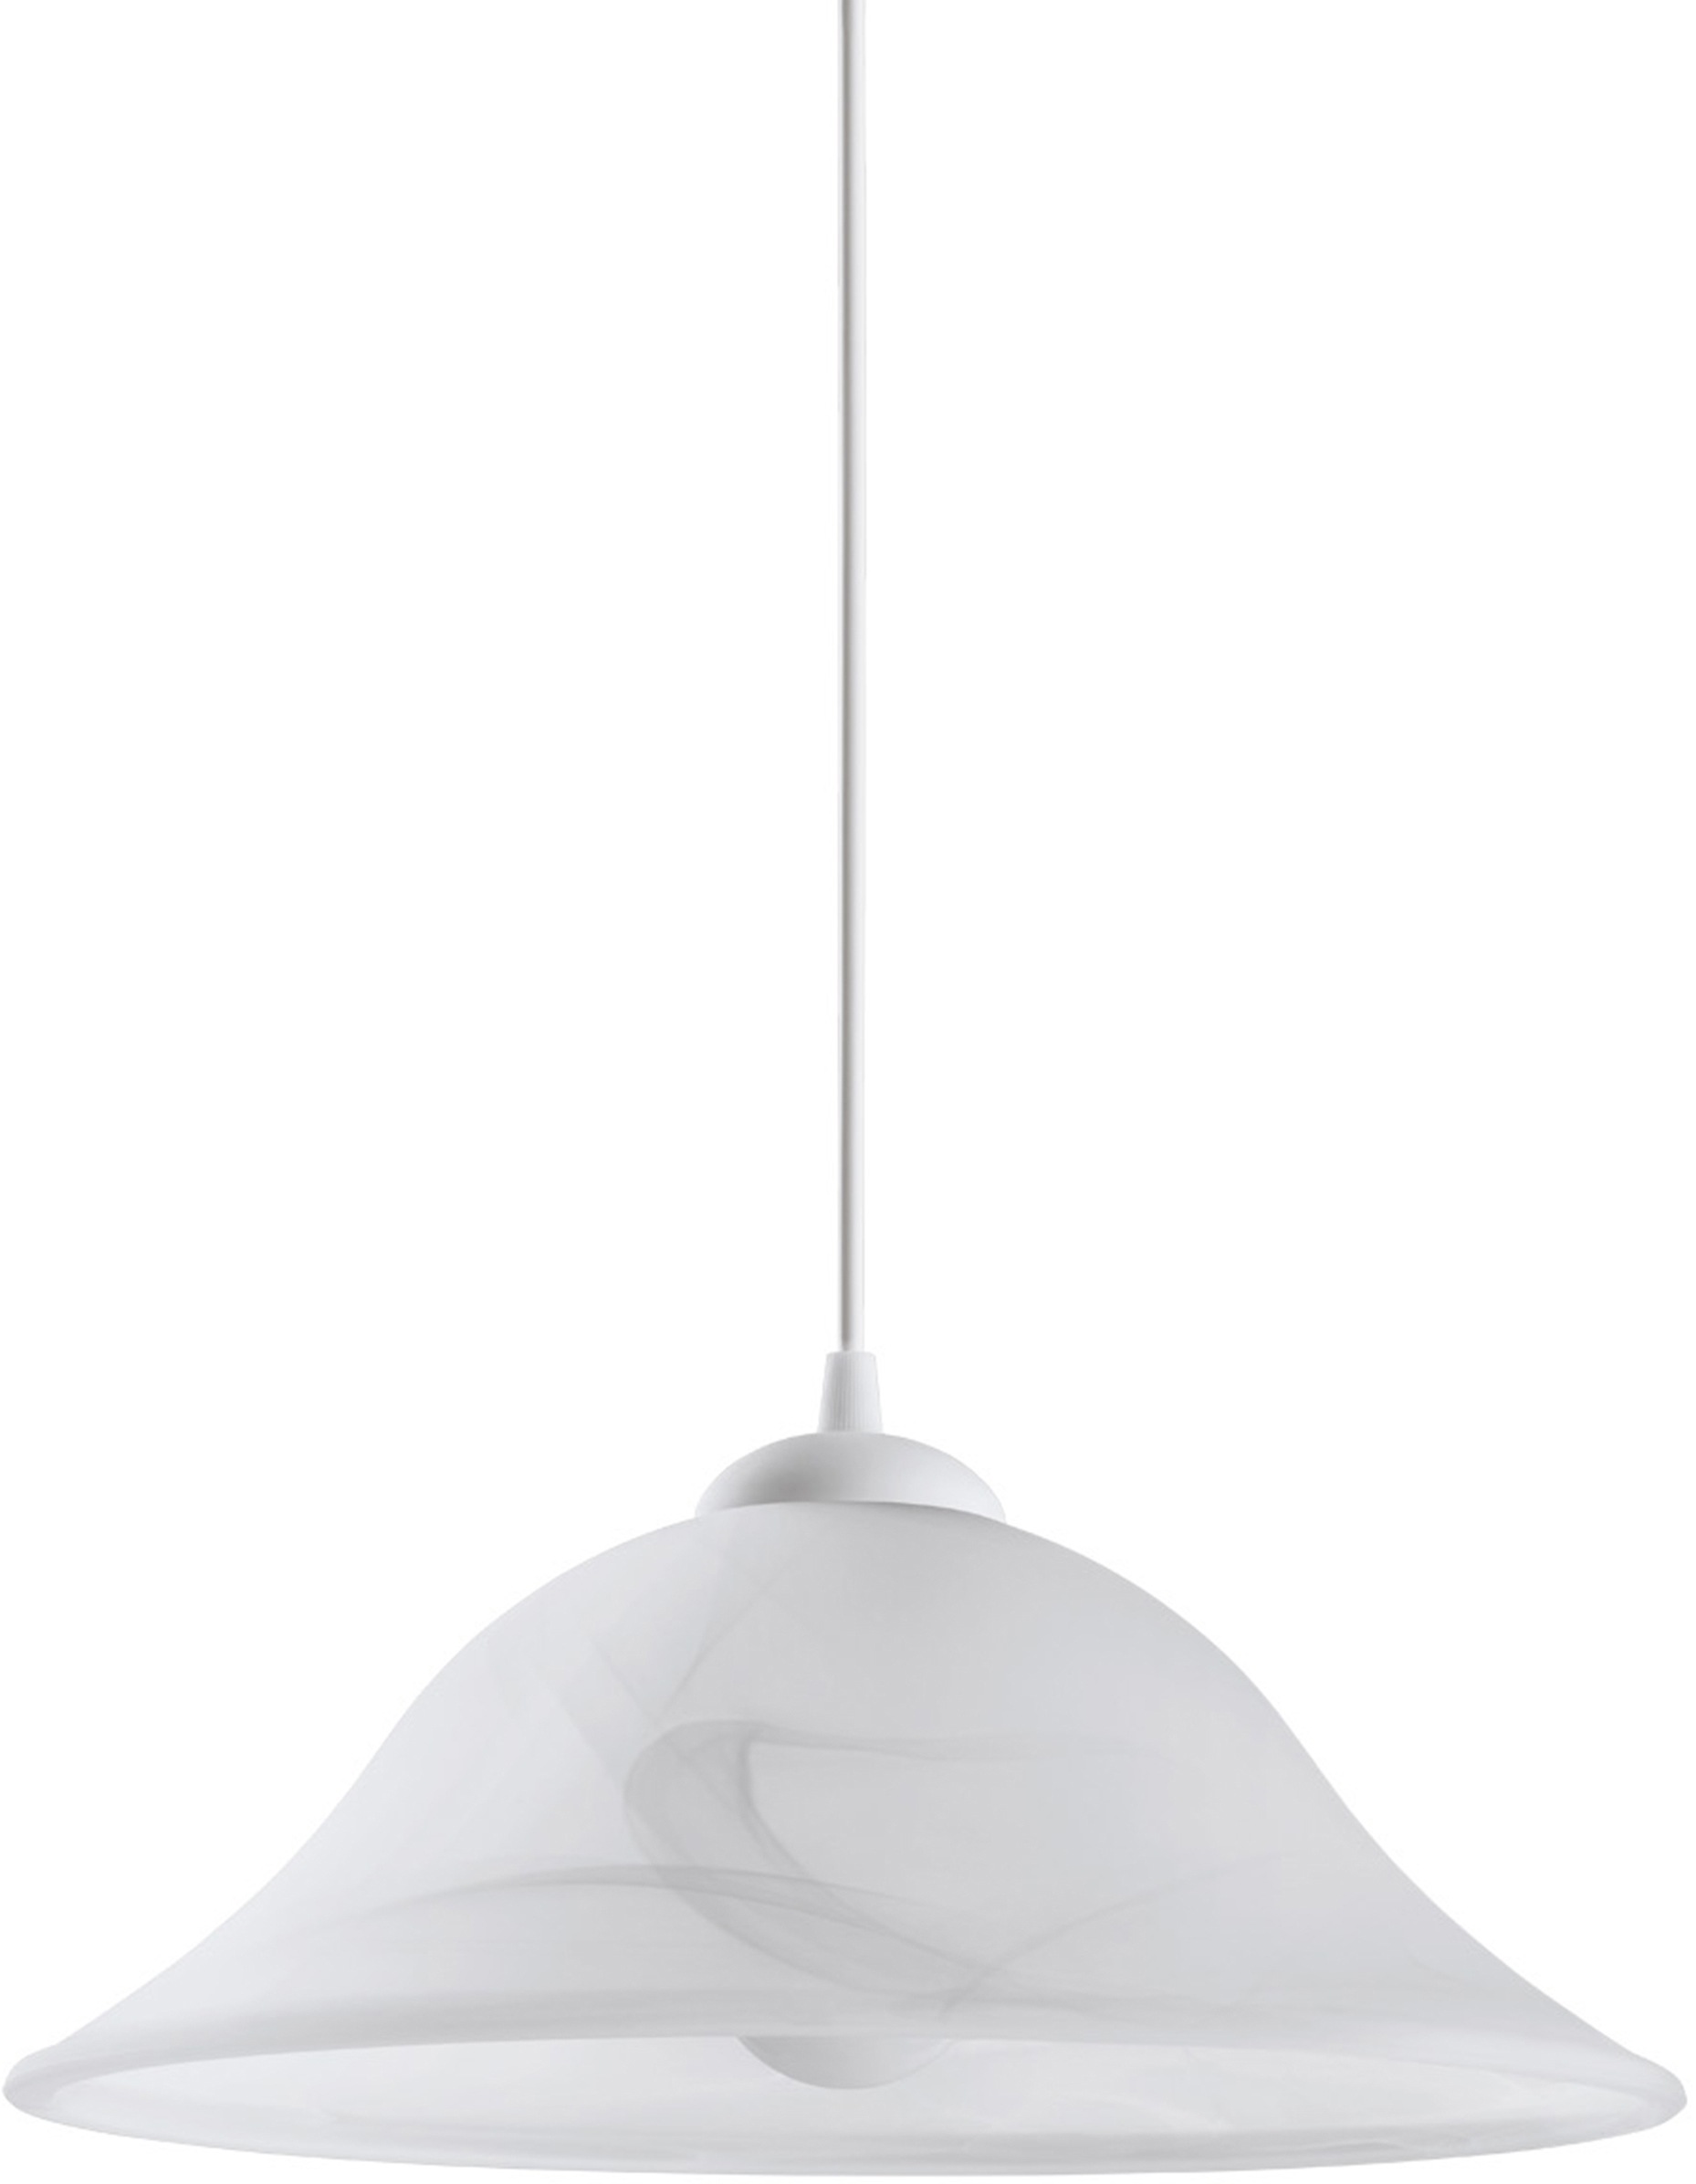 EGLO Pendelleuchte ALBANY, E27, weiß / Ø35 x H110 cm / exk. 1 x E27 (je max. 60W) / Pendellampe - Esstischlampe - Esstischleuchte - Hängelampe - Esszimmerlampe - Lampe für Esstisch - Wohnzimmerlampe - Hängeleuchte - Küche - Wohnzimmer